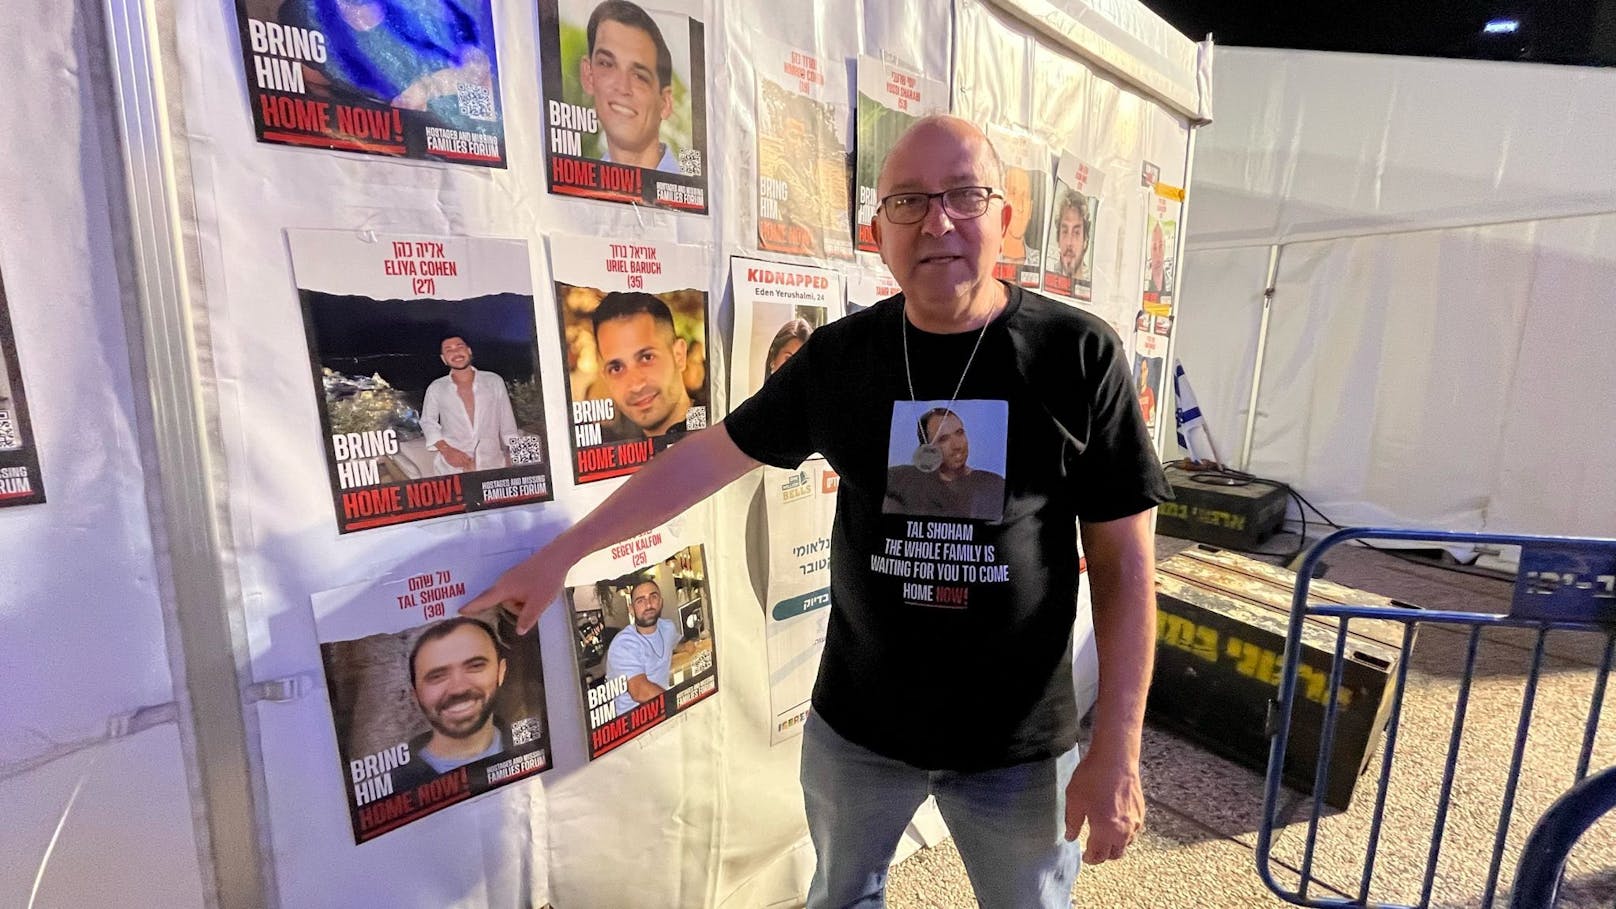 Vor Kurzem wurde der Vermisste österreichisch-israelische Doppelstaatsbürger in Gefangenschaft 39 Jahre alt – ob er noch lebt: unklar.